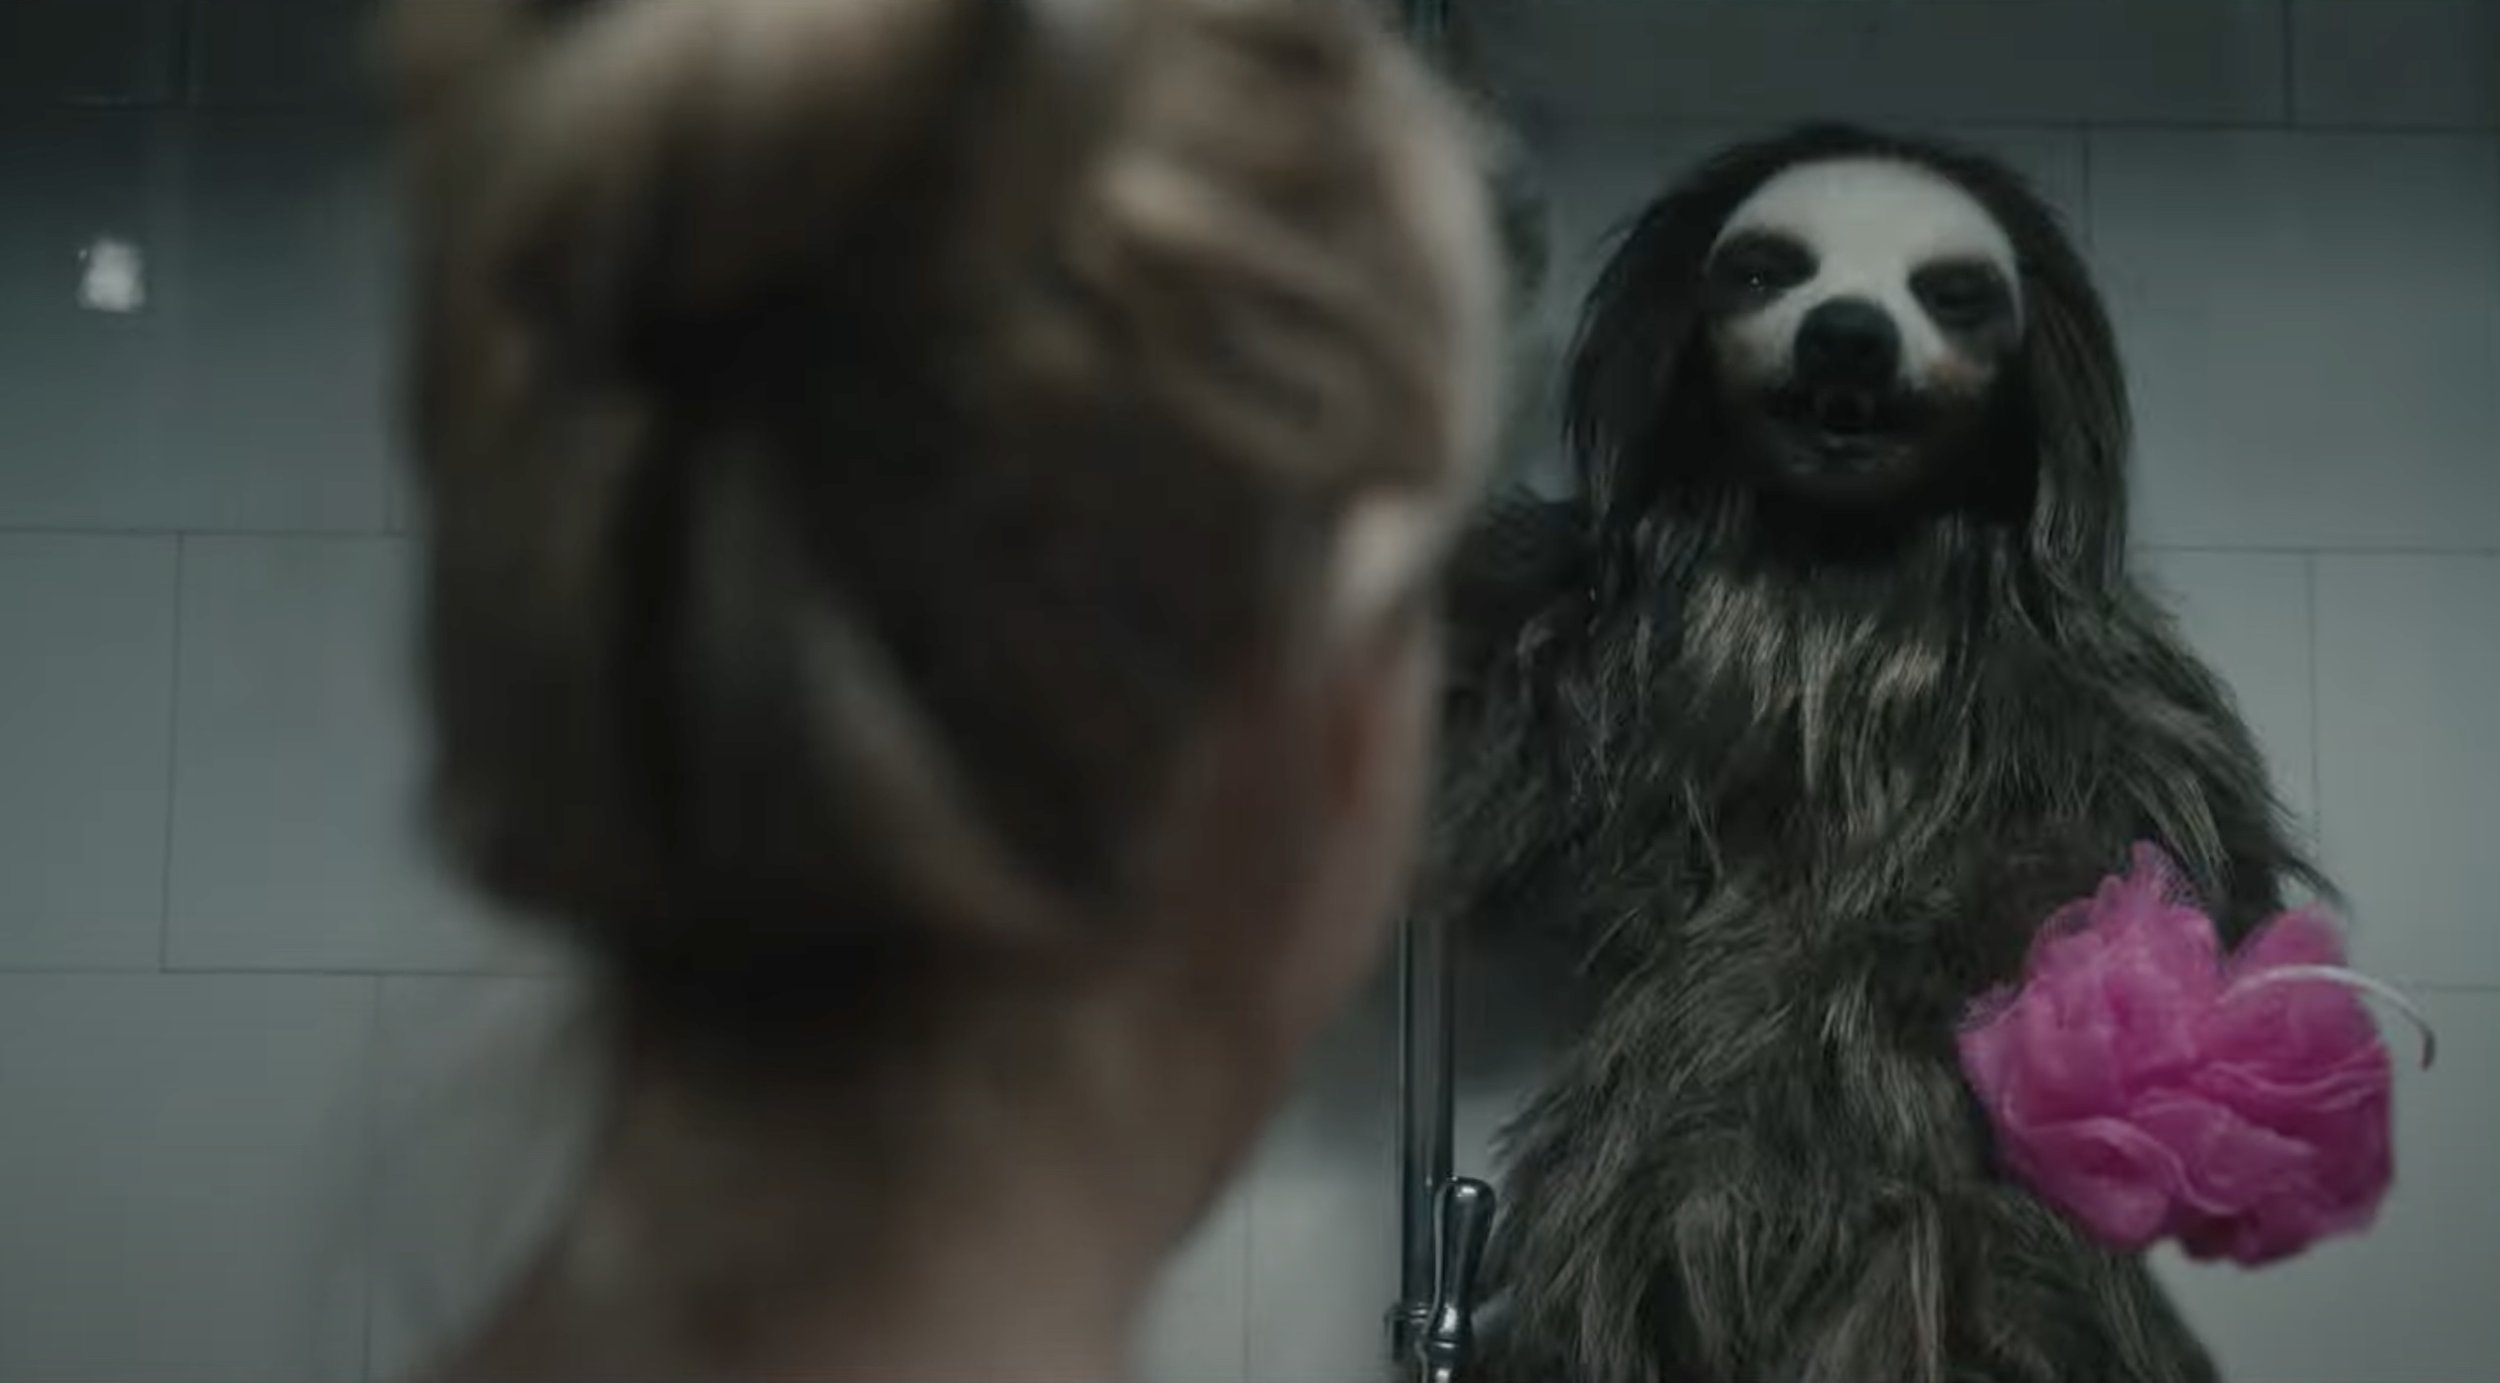 Killer Sloth Horror Film Trailer Sparks Laughter